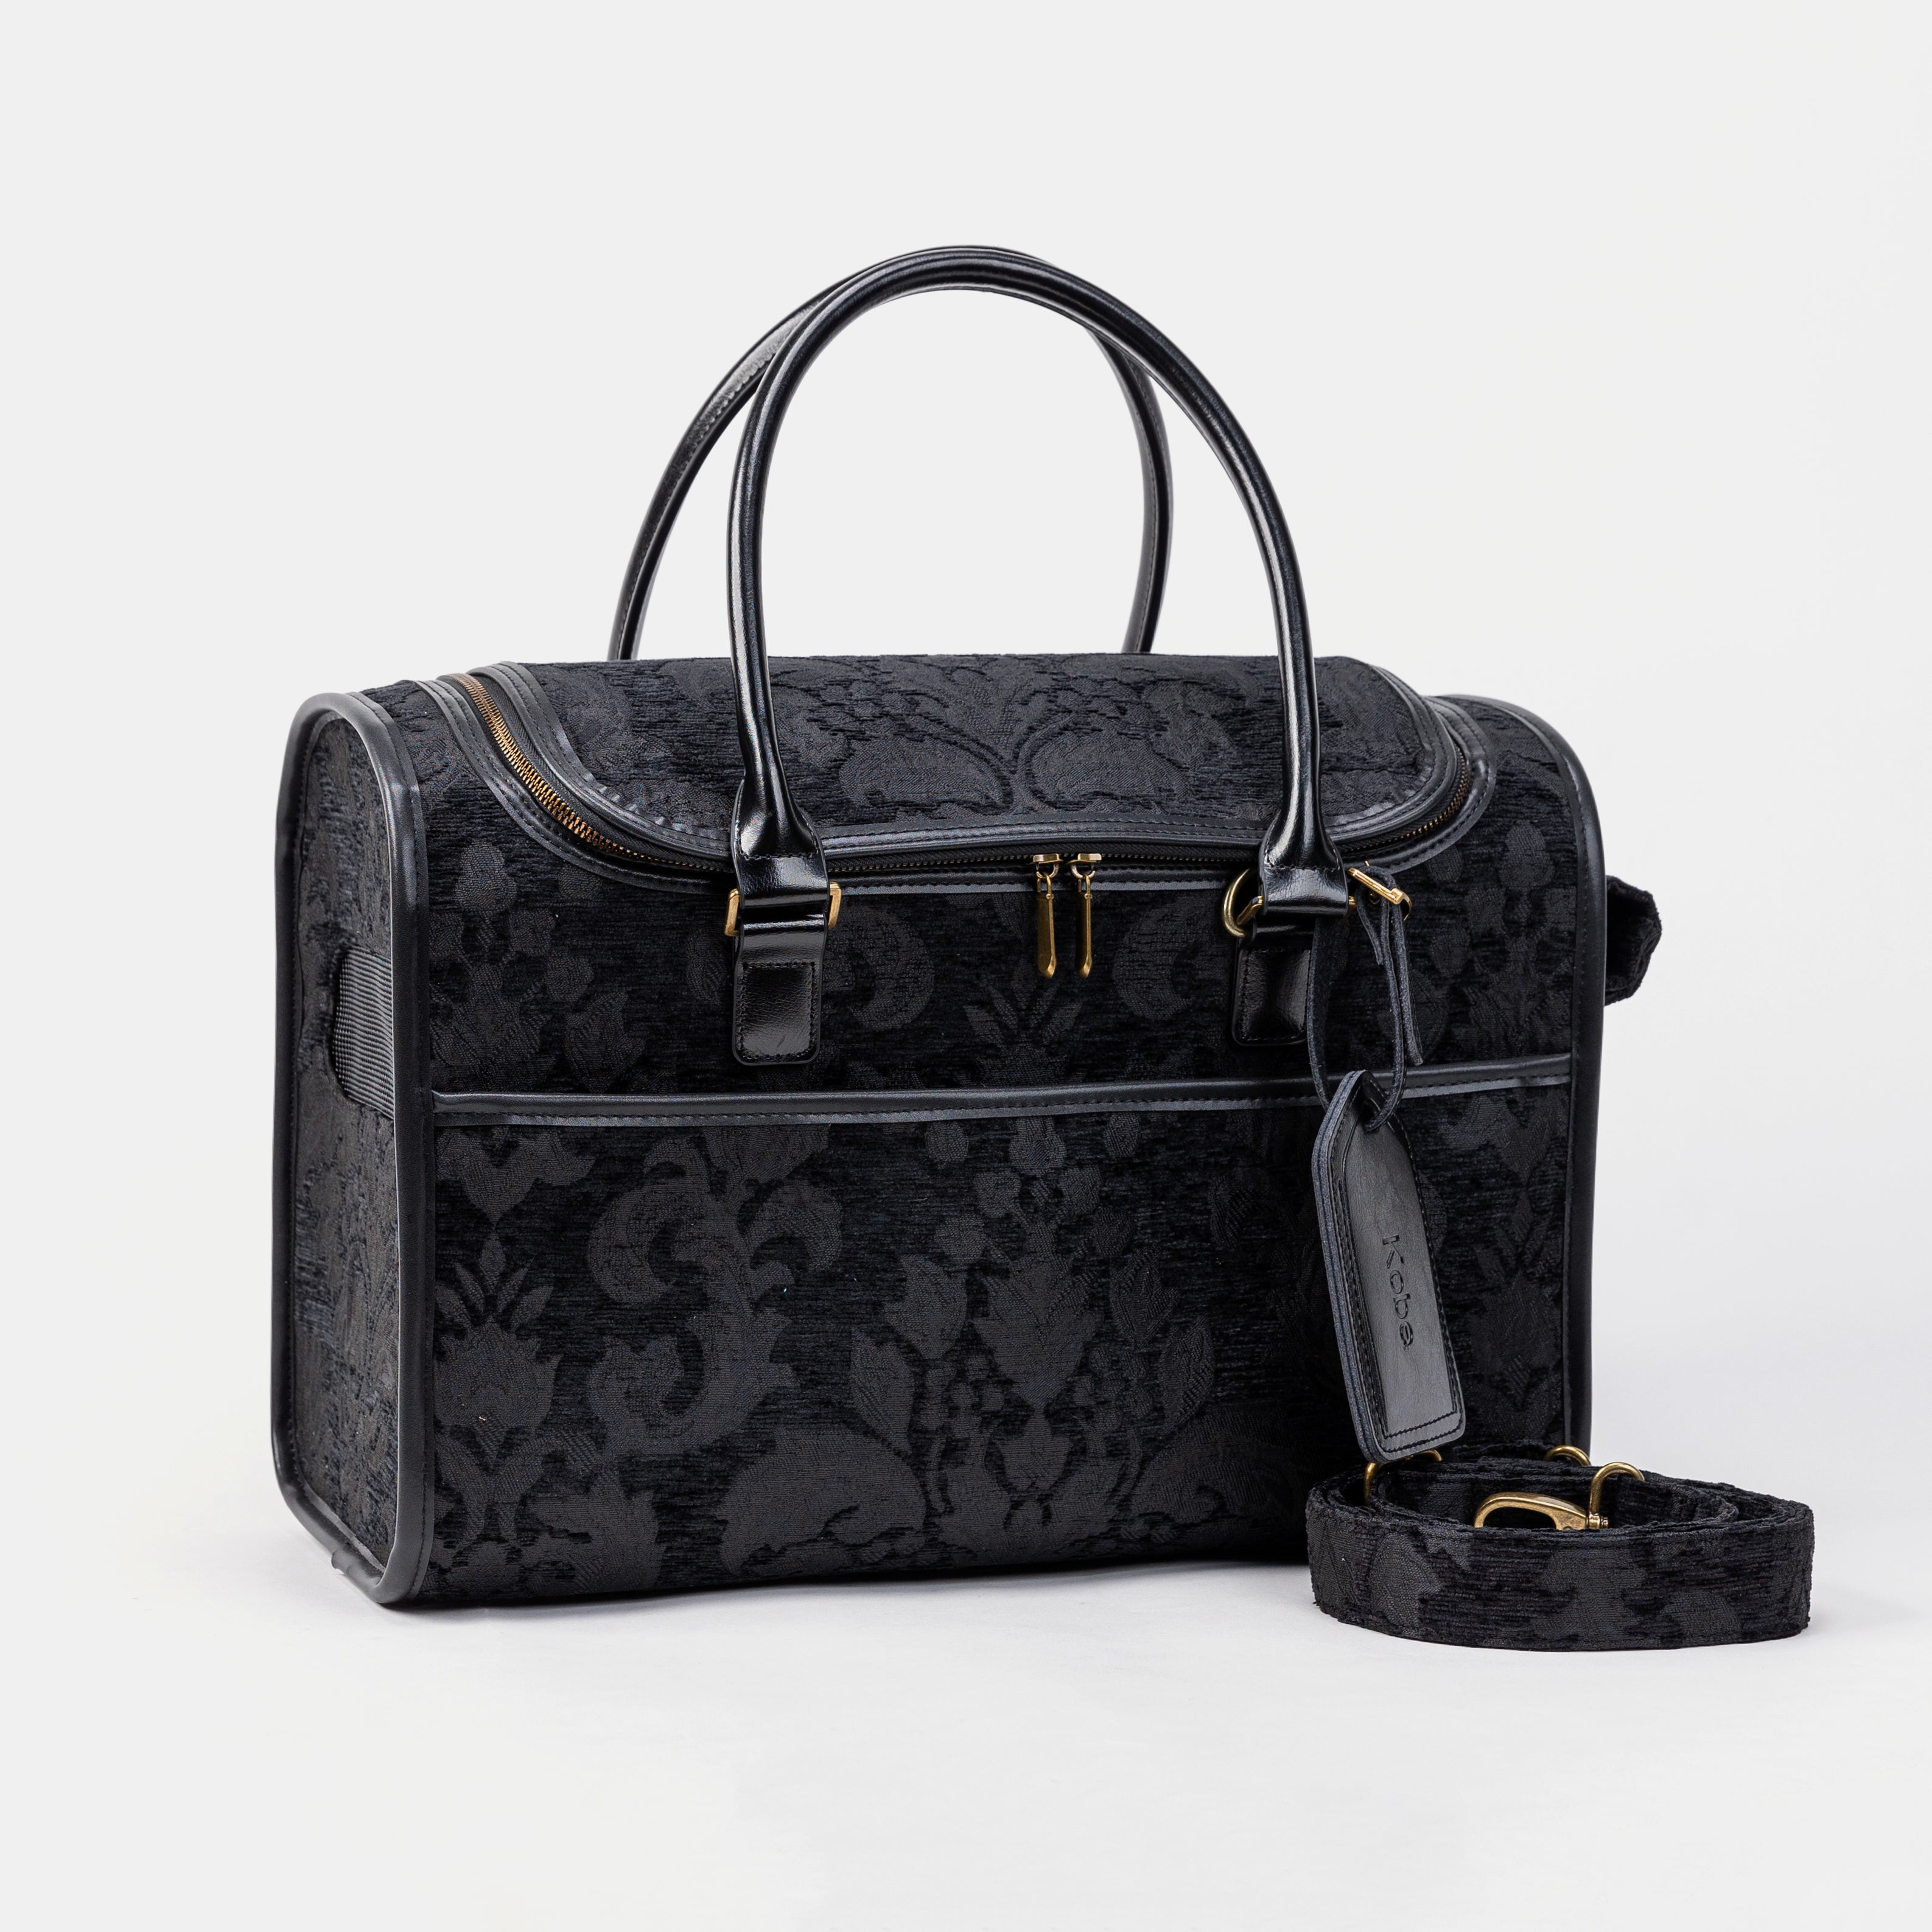 Travel Dog Carrier Bag Victorian Blossom Black Shoulder Strap